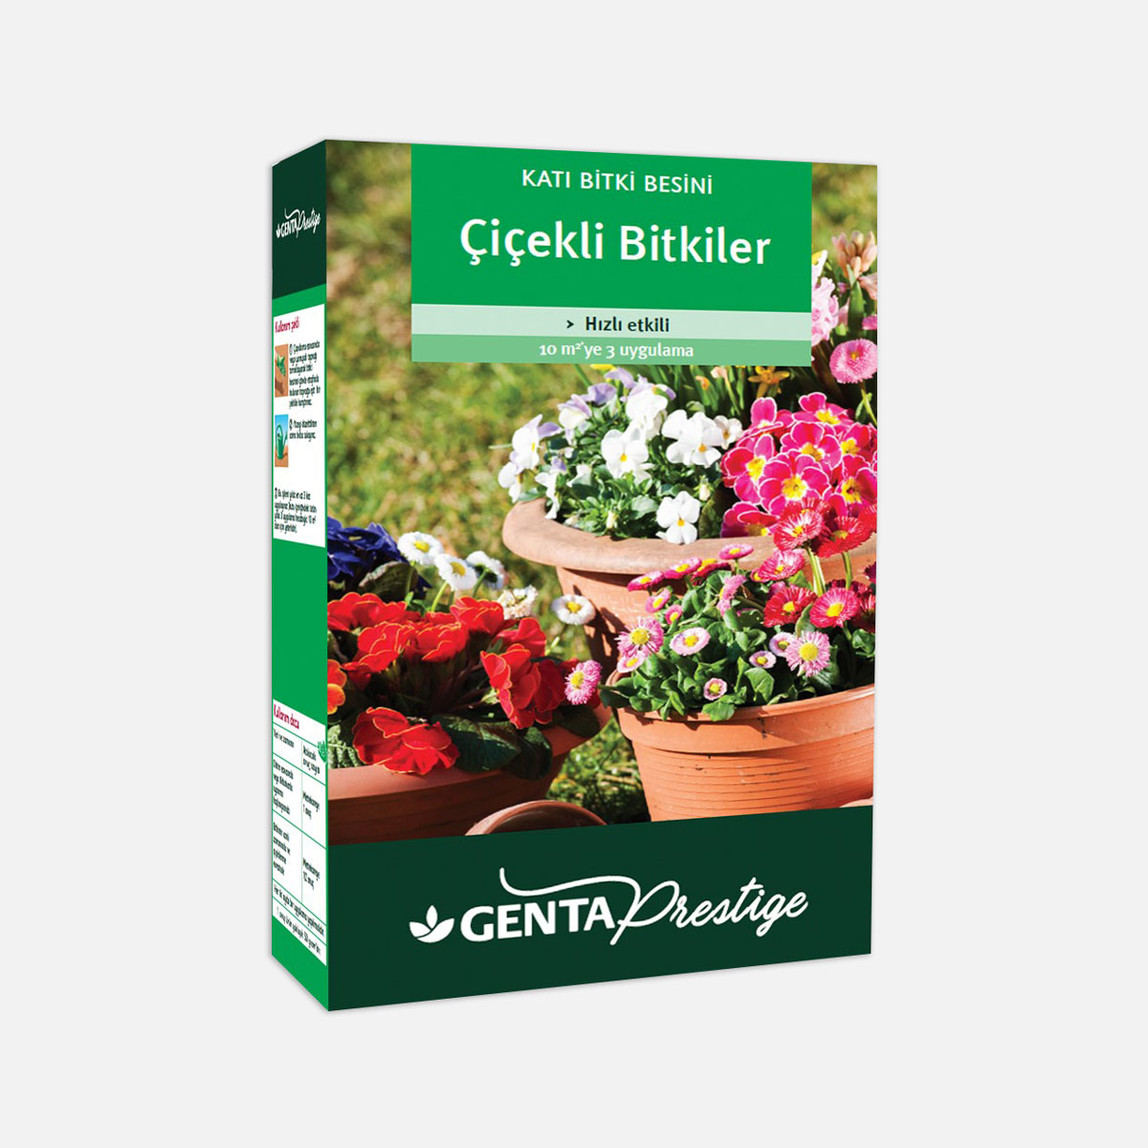    Genta Prestige Çiçekli Bitkiler İçin Katı Bitki Besini 